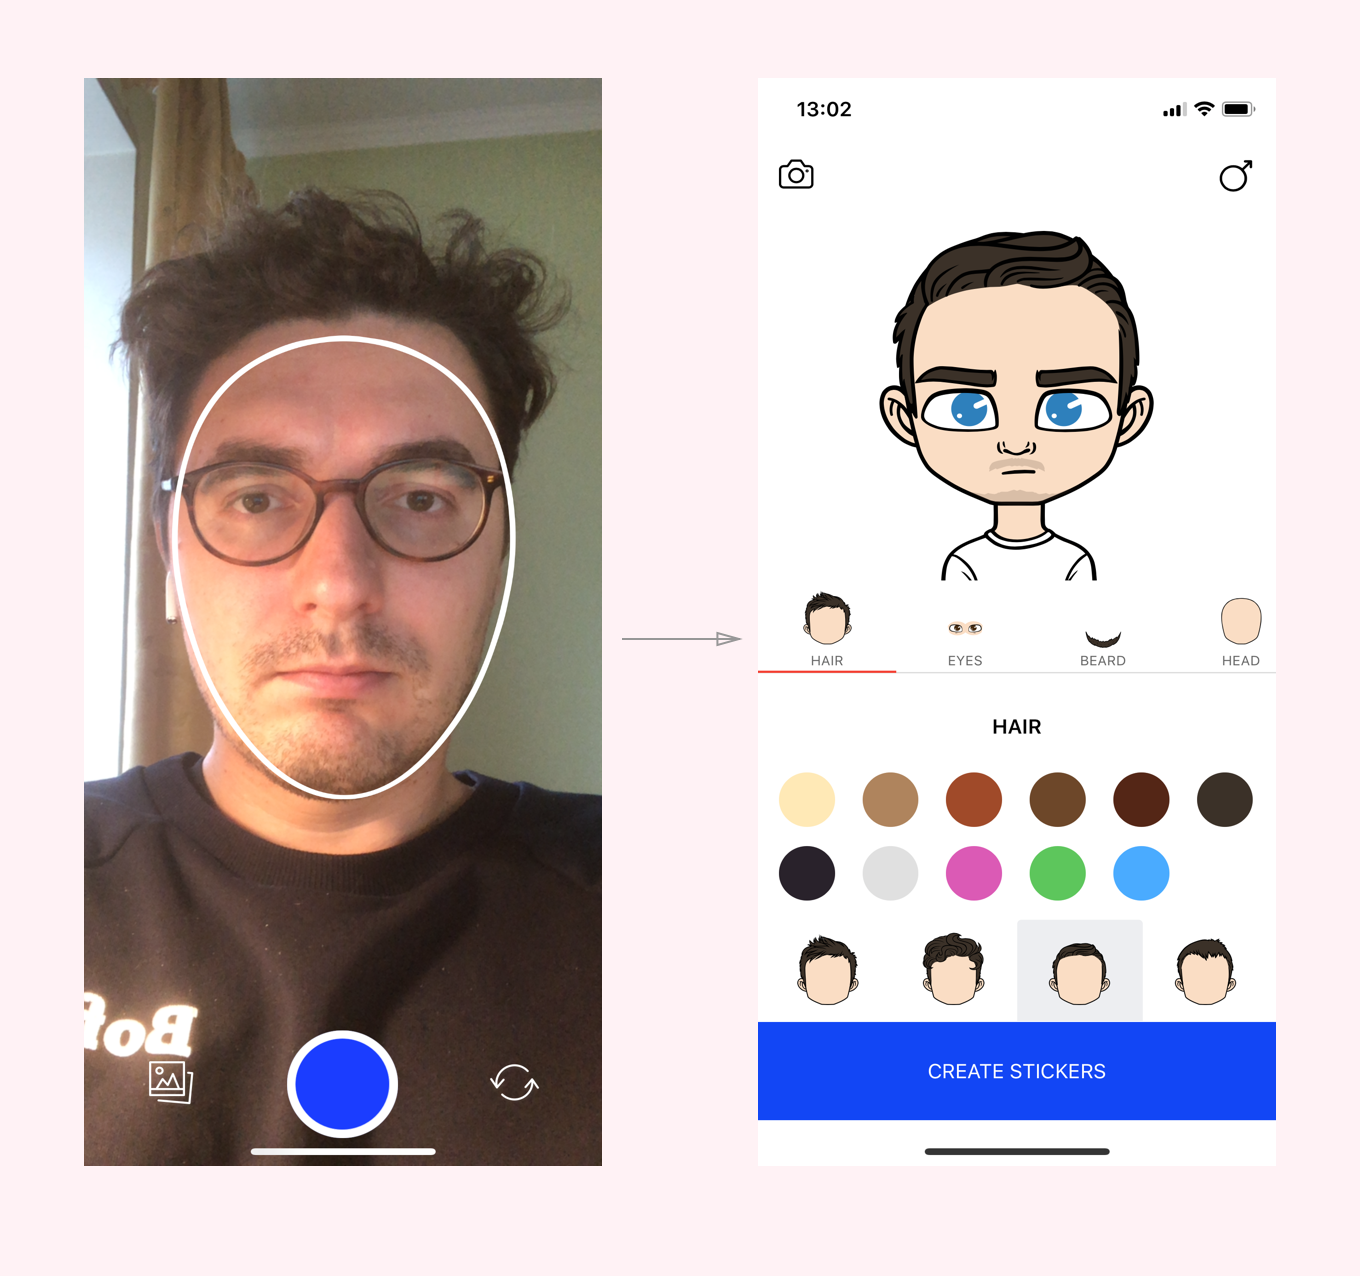 Программа для создания аватарки. Создание стикеров со своим лицом. Приложение для делания стикеров. Приложение для создания своего аватара.